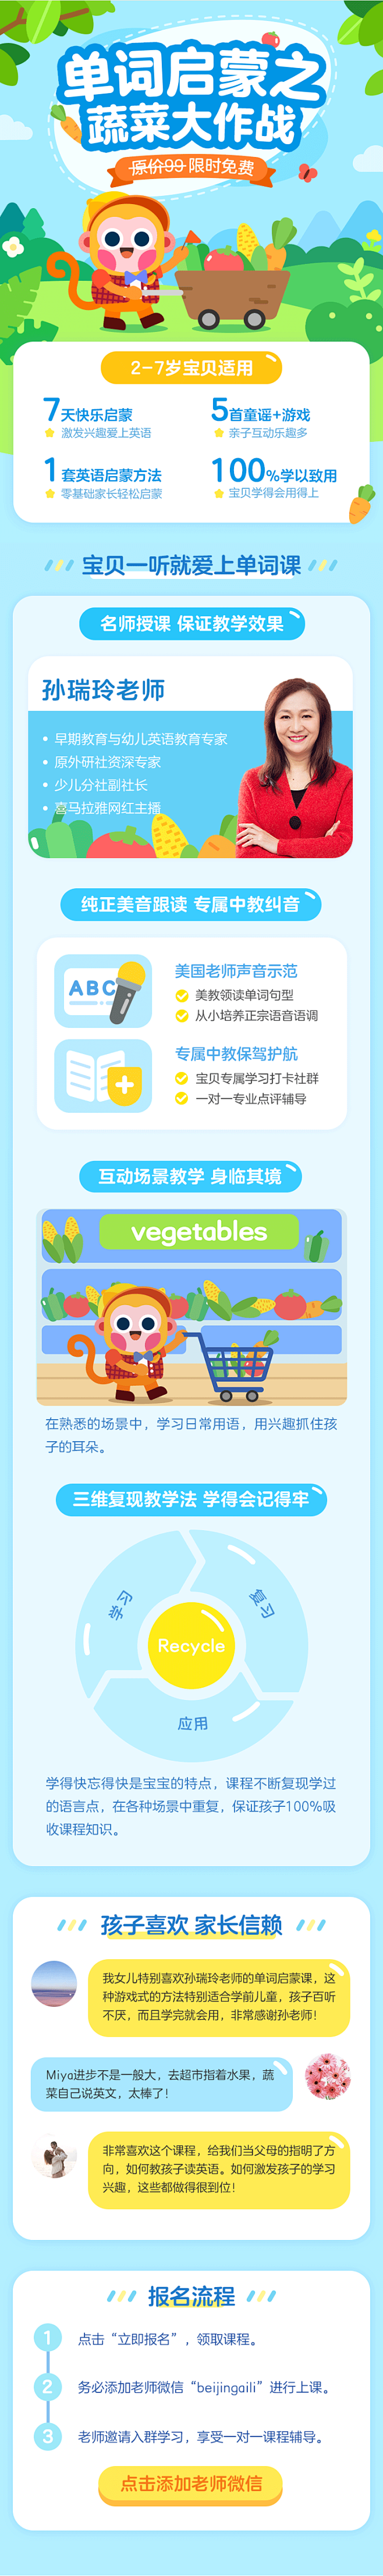 【英语单词启蒙】蔬菜大作战 - - 有道...